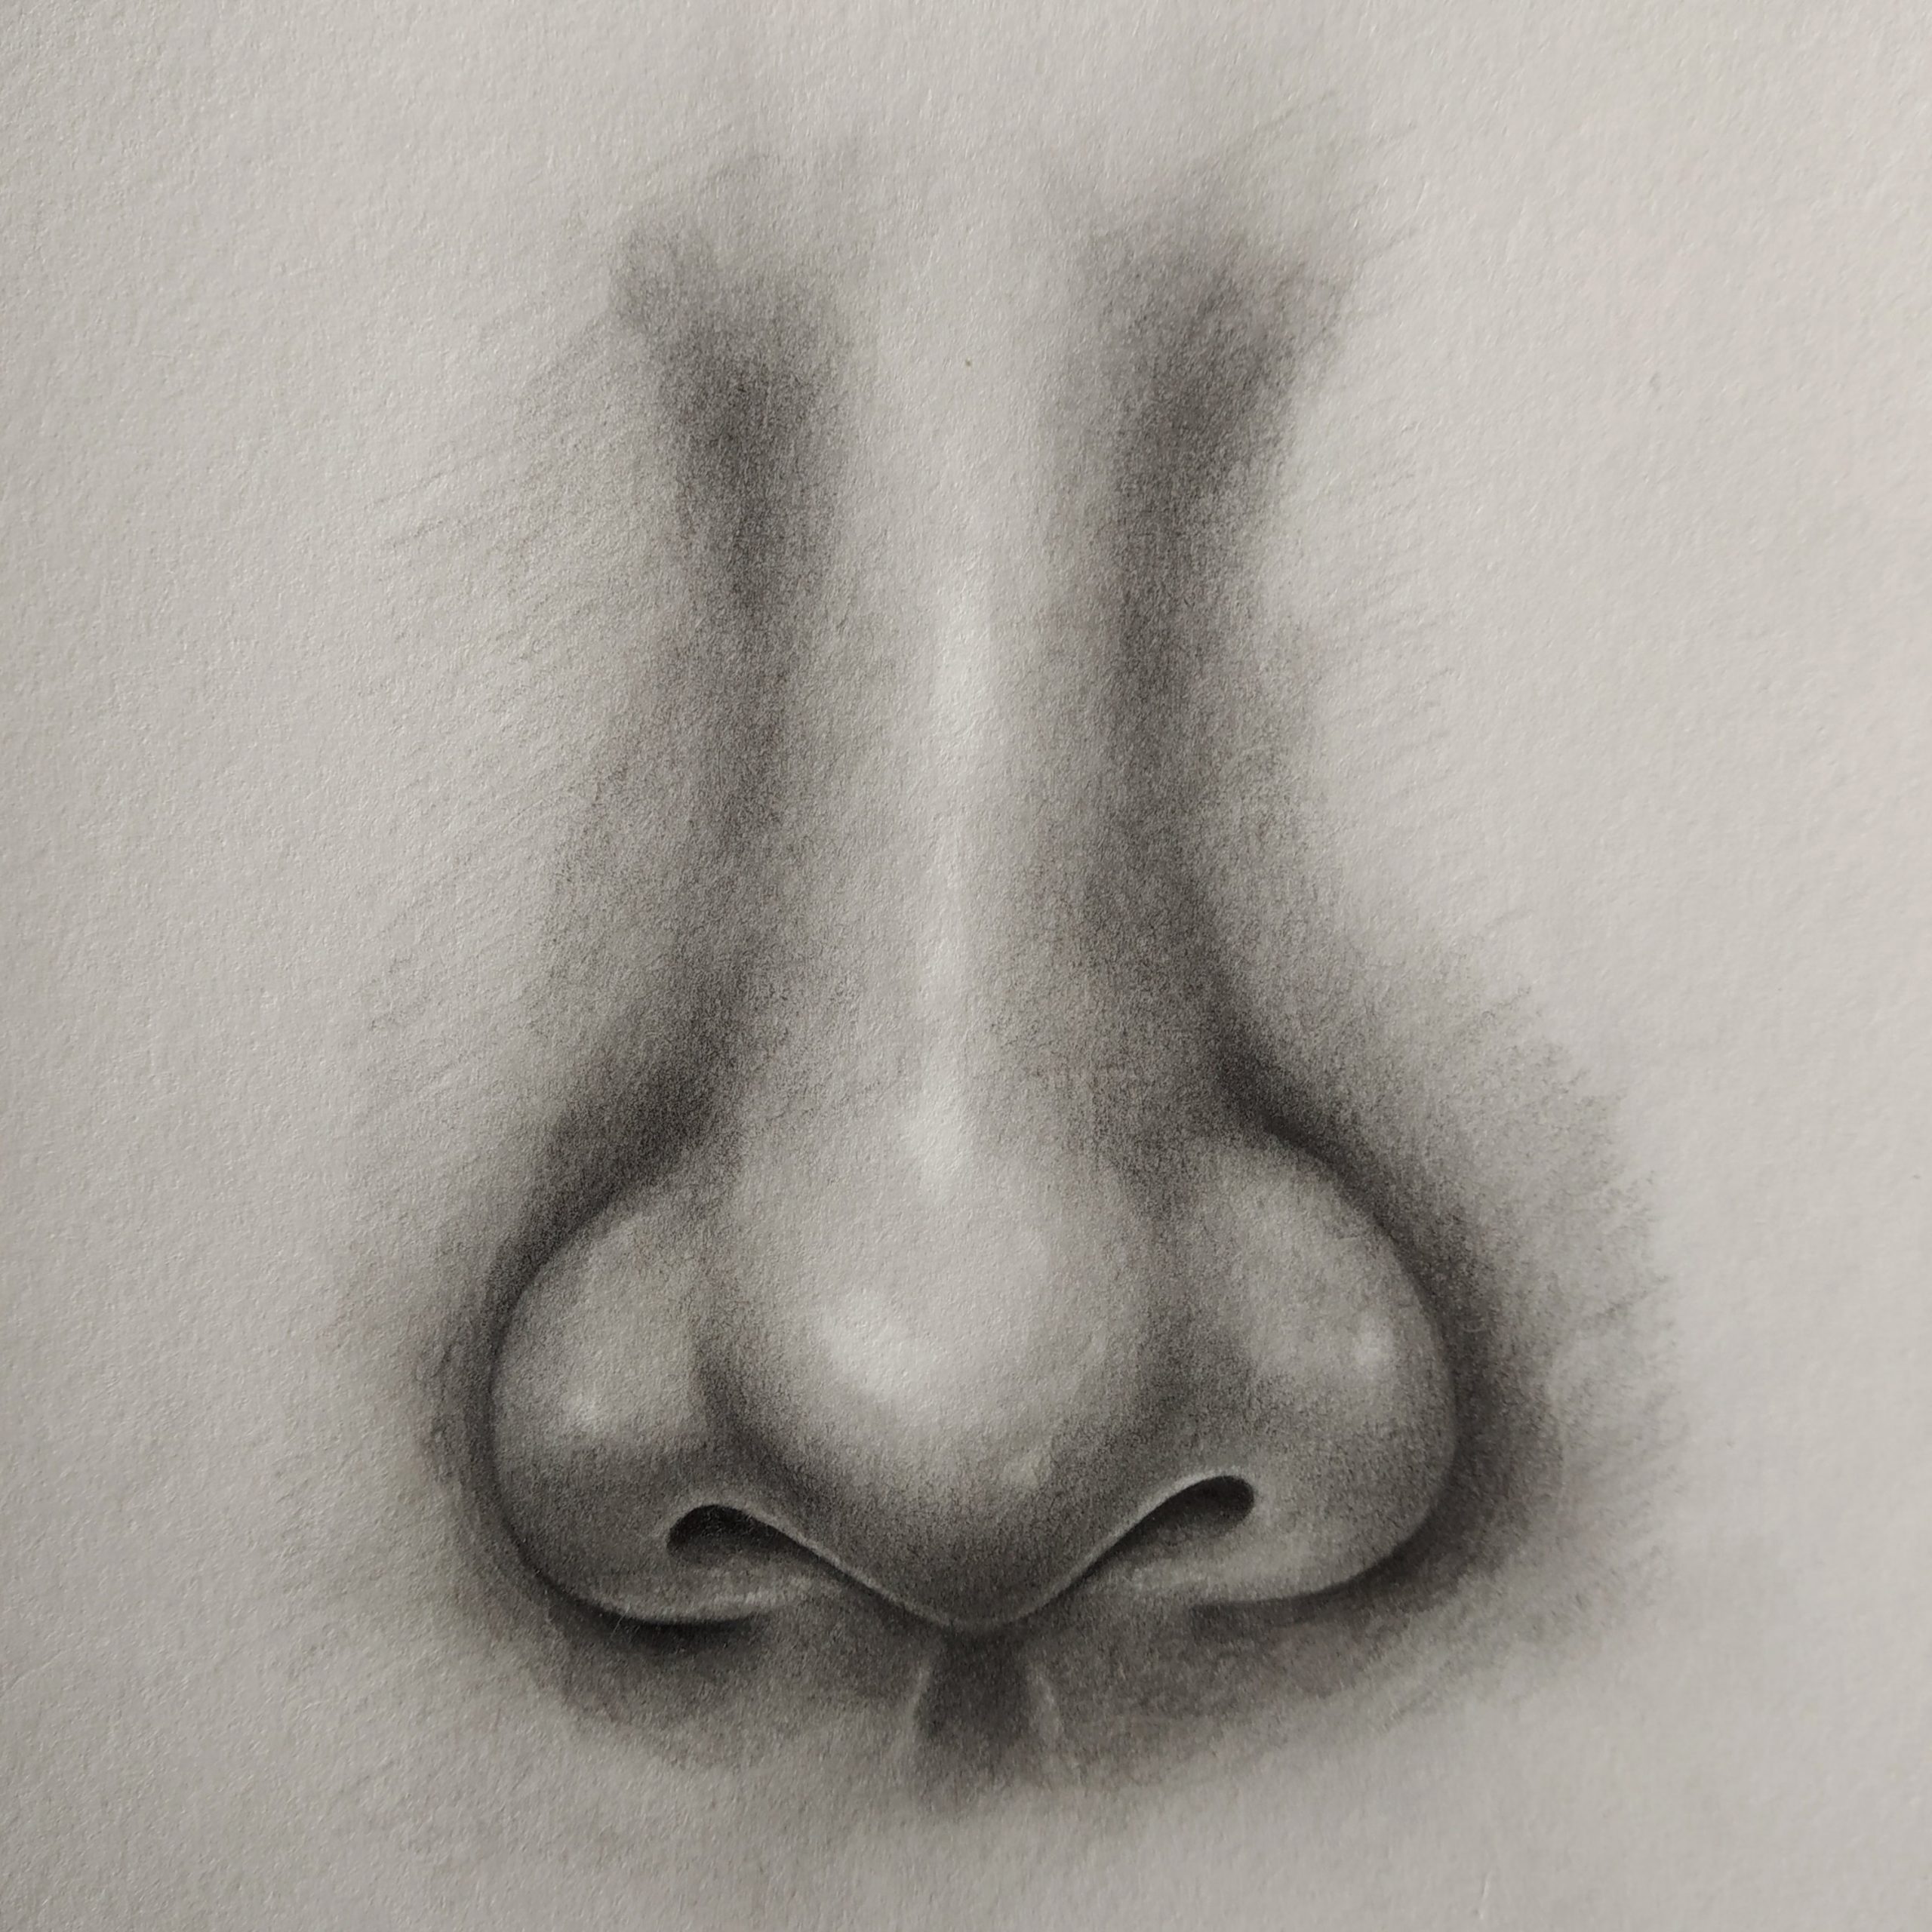 normal nose sketch